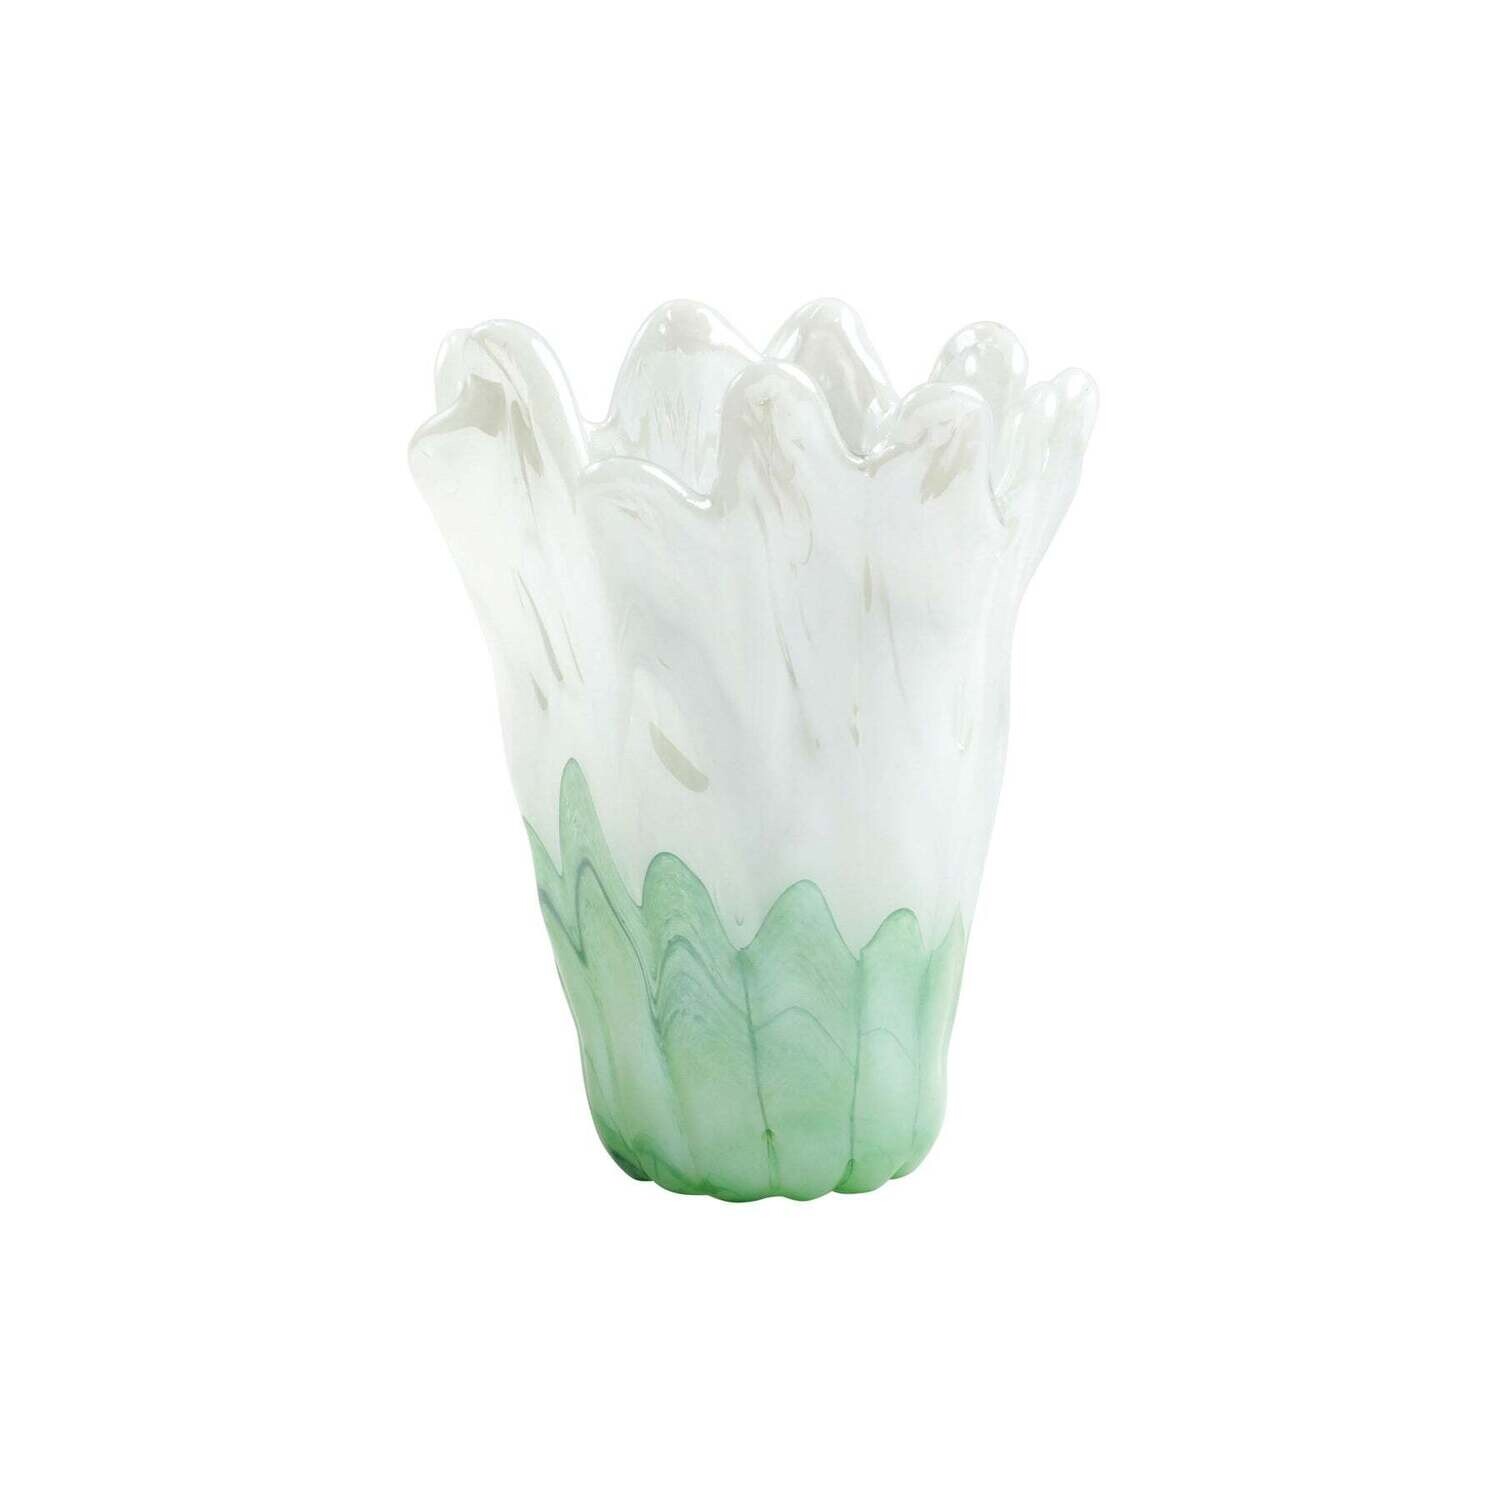 VIETRI Onda Glass Green and White Medium Vase